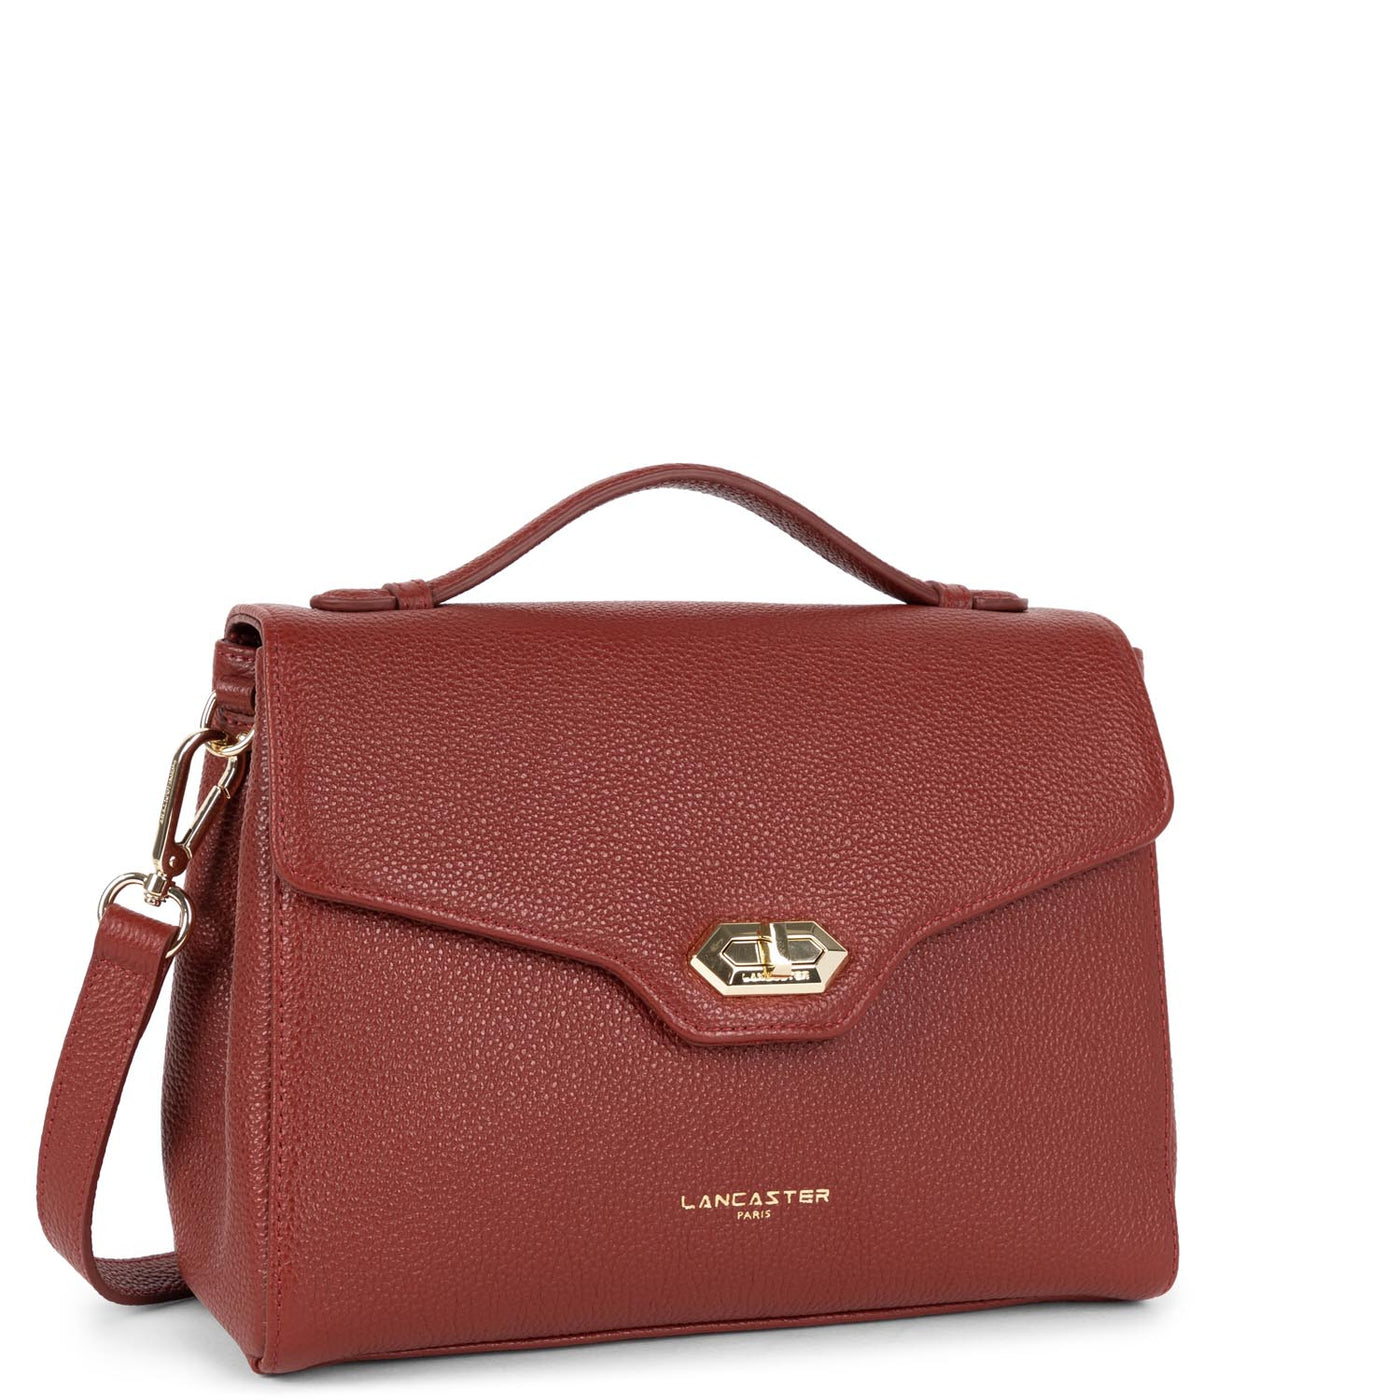 handbag - foulonné milano #couleur_carmin